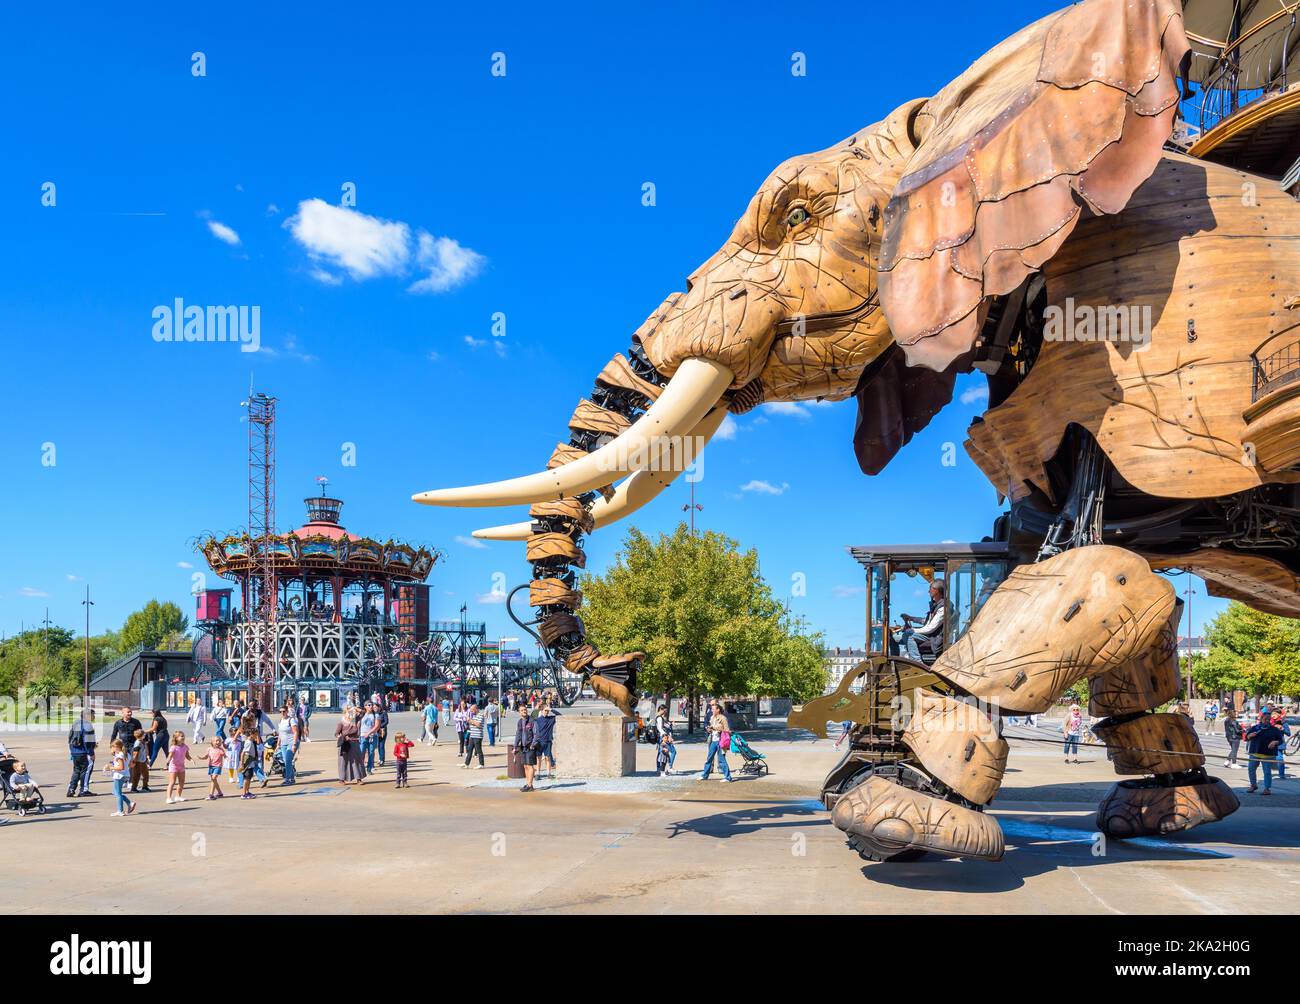 La marionnette géante du Grand Eléphant, qui fait partie des machines de l'attraction de l'île de Nantes, avec le carrousel des mondes marins au loin. Banque D'Images